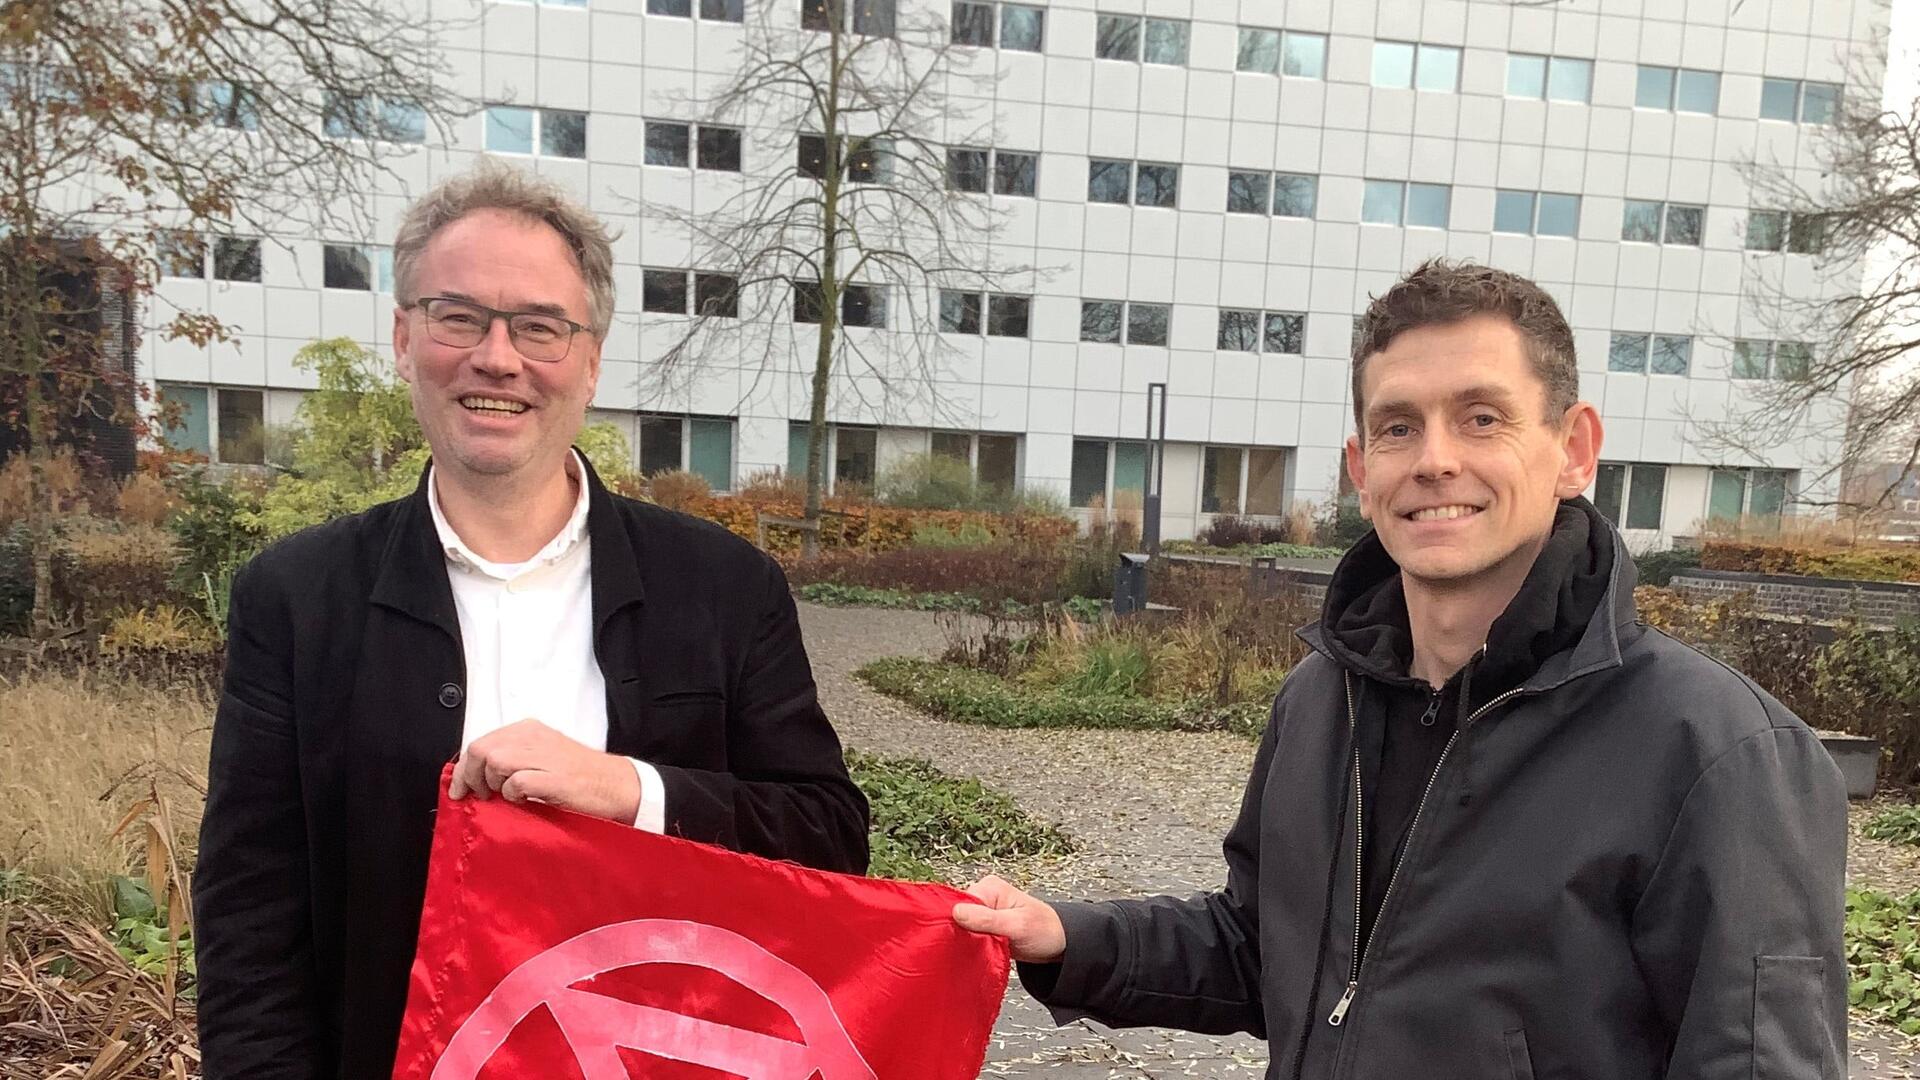 Martin en Rob houden een rode vlag met het symbool van XR erop vast.